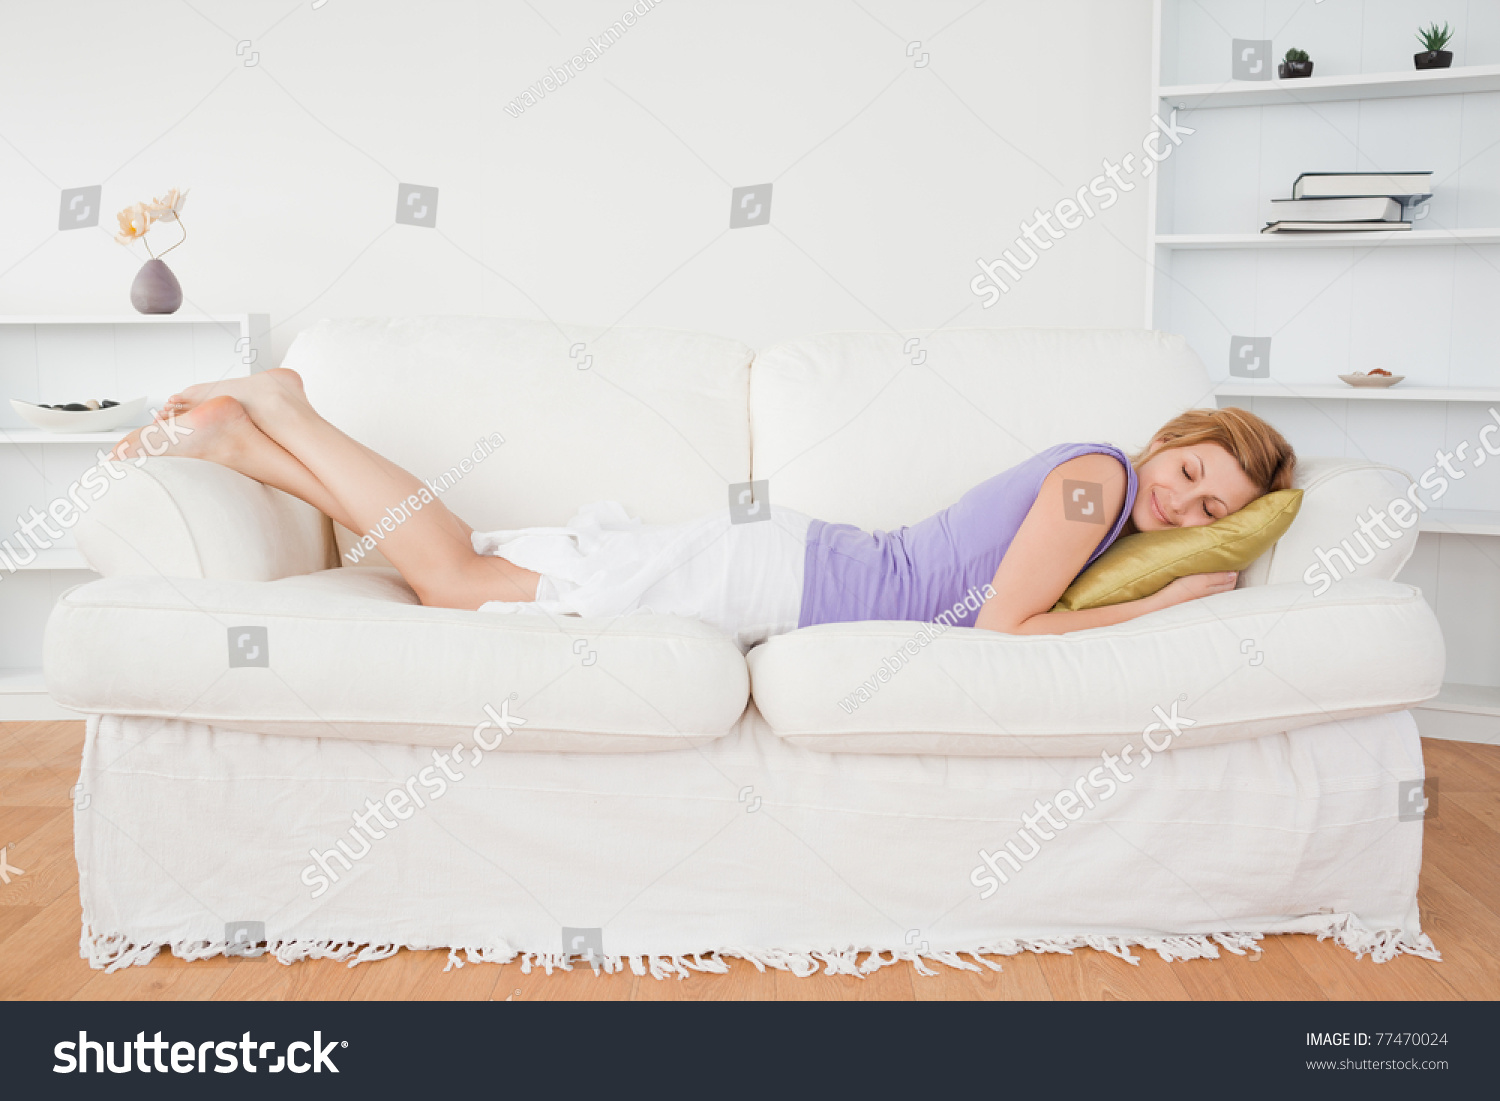 Лежал или лижал. Девушка лежит на диване отдыхает. Девушка лежит на диване на животе. Упражнения лежа на диване с телефоном.